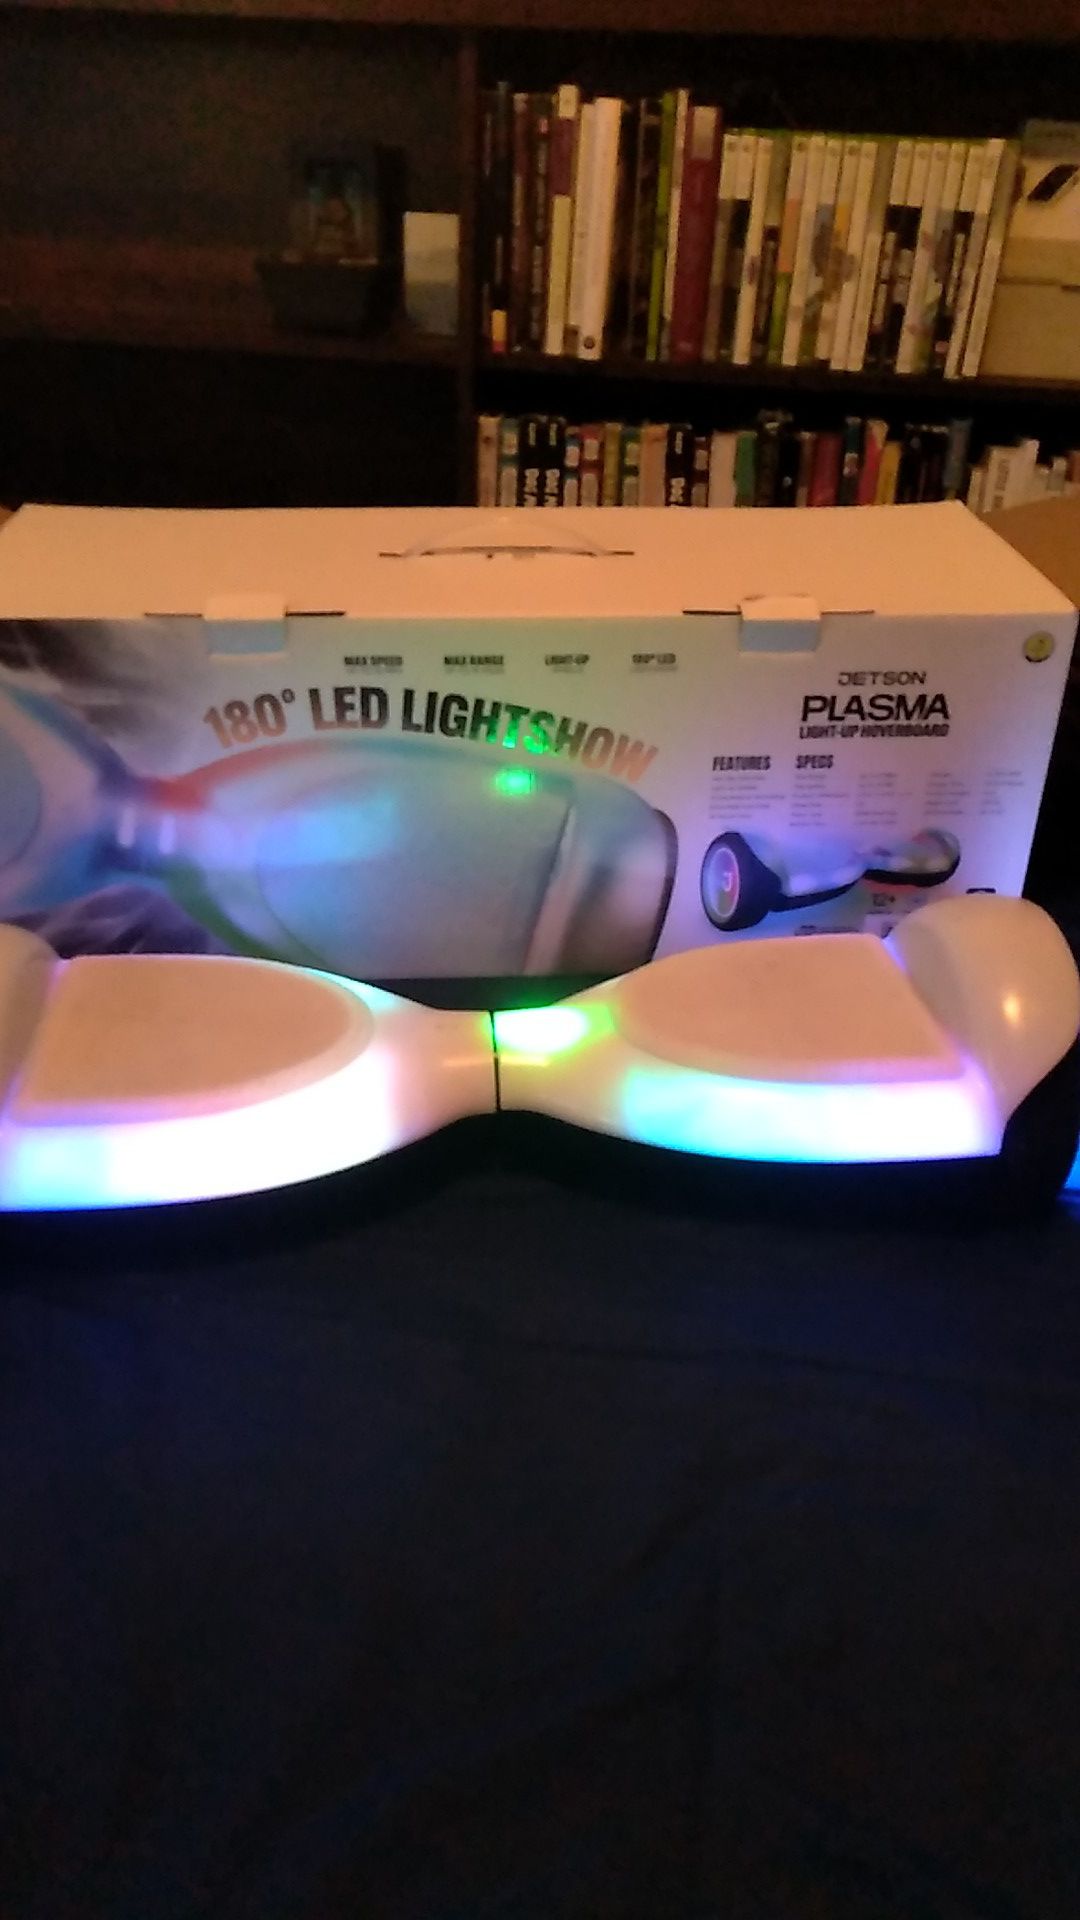 180⁰ led lightshow jetson plasma hoverboard